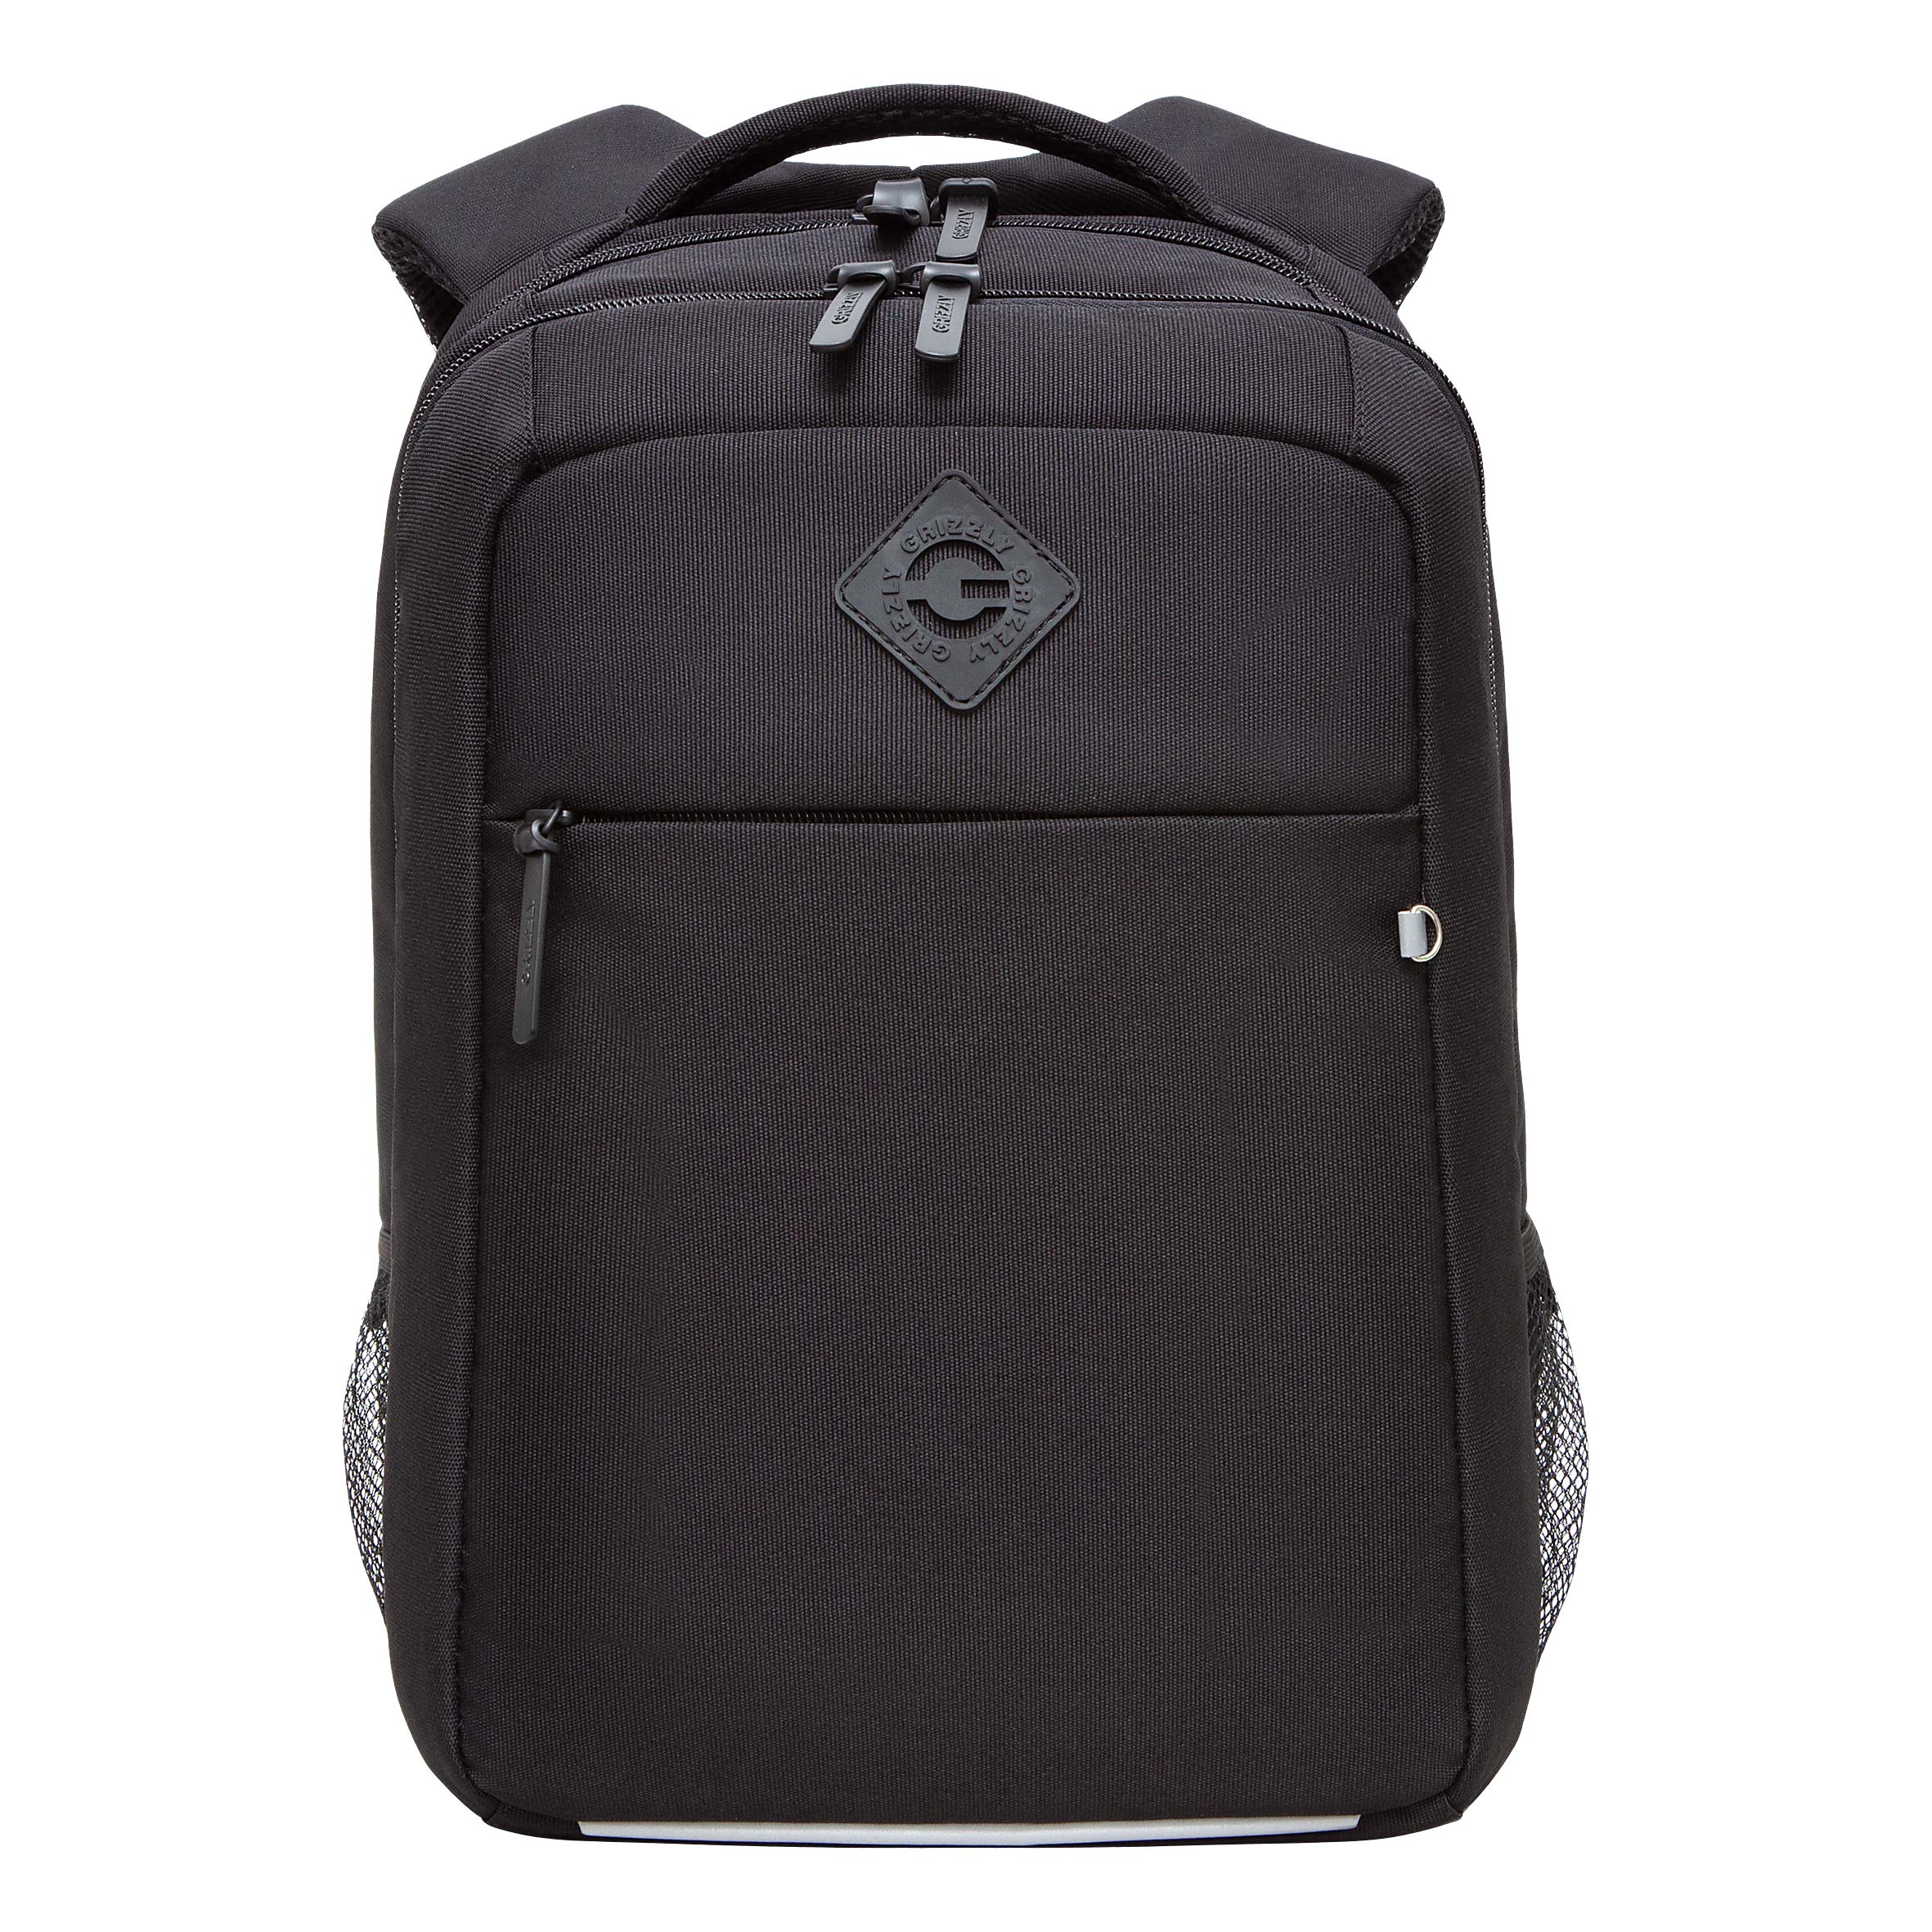 Рюкзак GRIZZLY с карманом для ноутбука 13, анатомический, для мальчика RB-456-11 рюкзак для ноутбука 13 3 sumdex pon 266gy